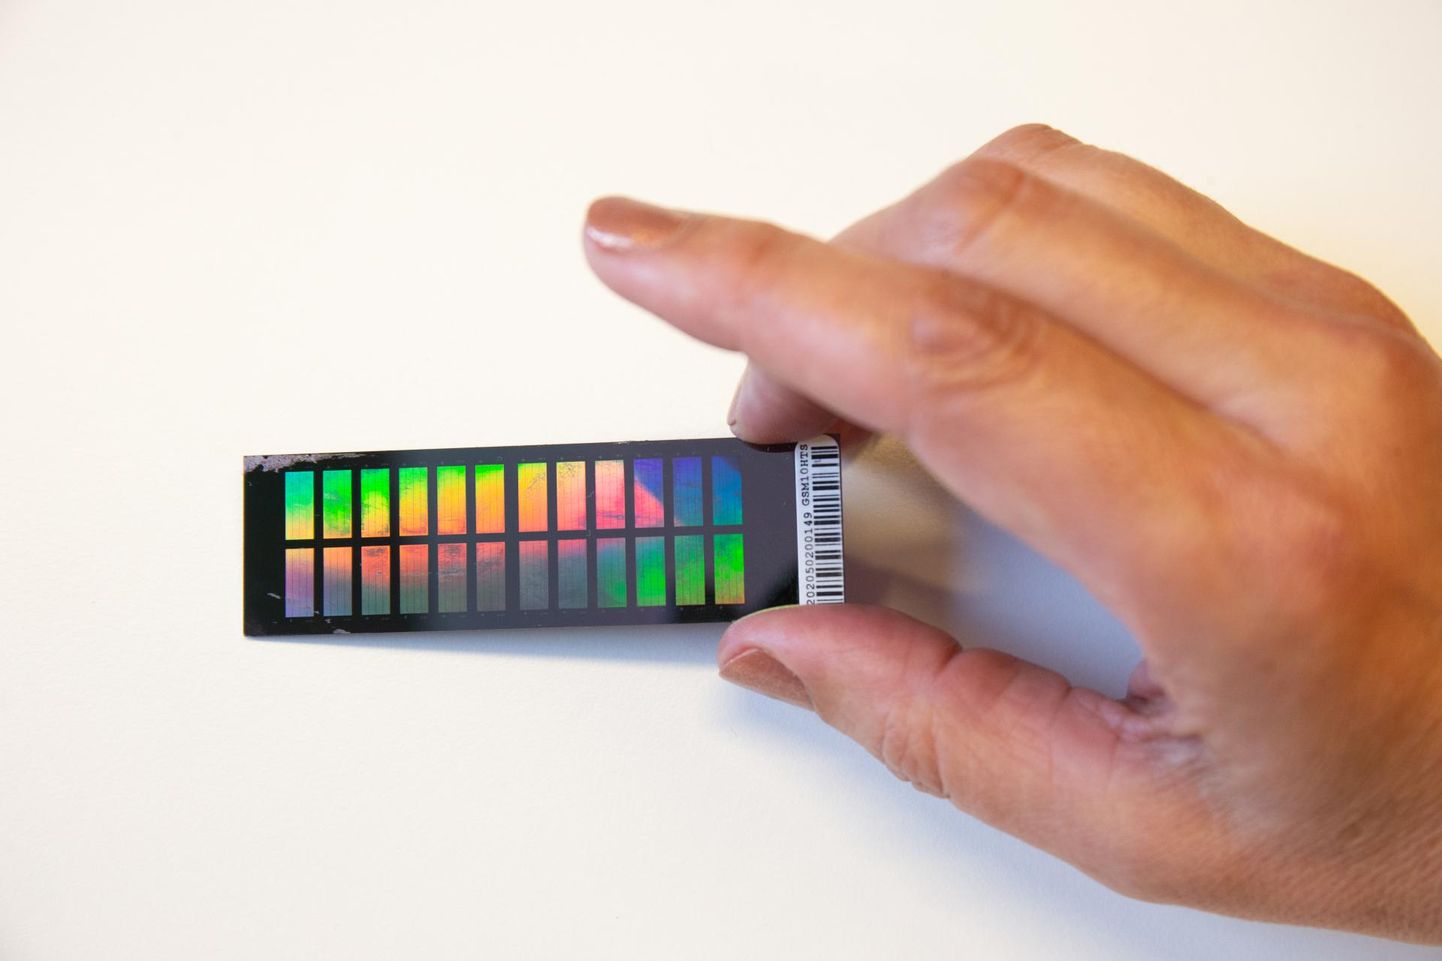 Geenikiip läigib nagu peegel ja heidab valgust püüdes vikerkaarevärvilisi mustreid. Kiip on jagatud 24 kastikeseks, ja igas, vähema kui ühe ruutsentimeetri peal on ühe inimese genoomi võtmekohad.